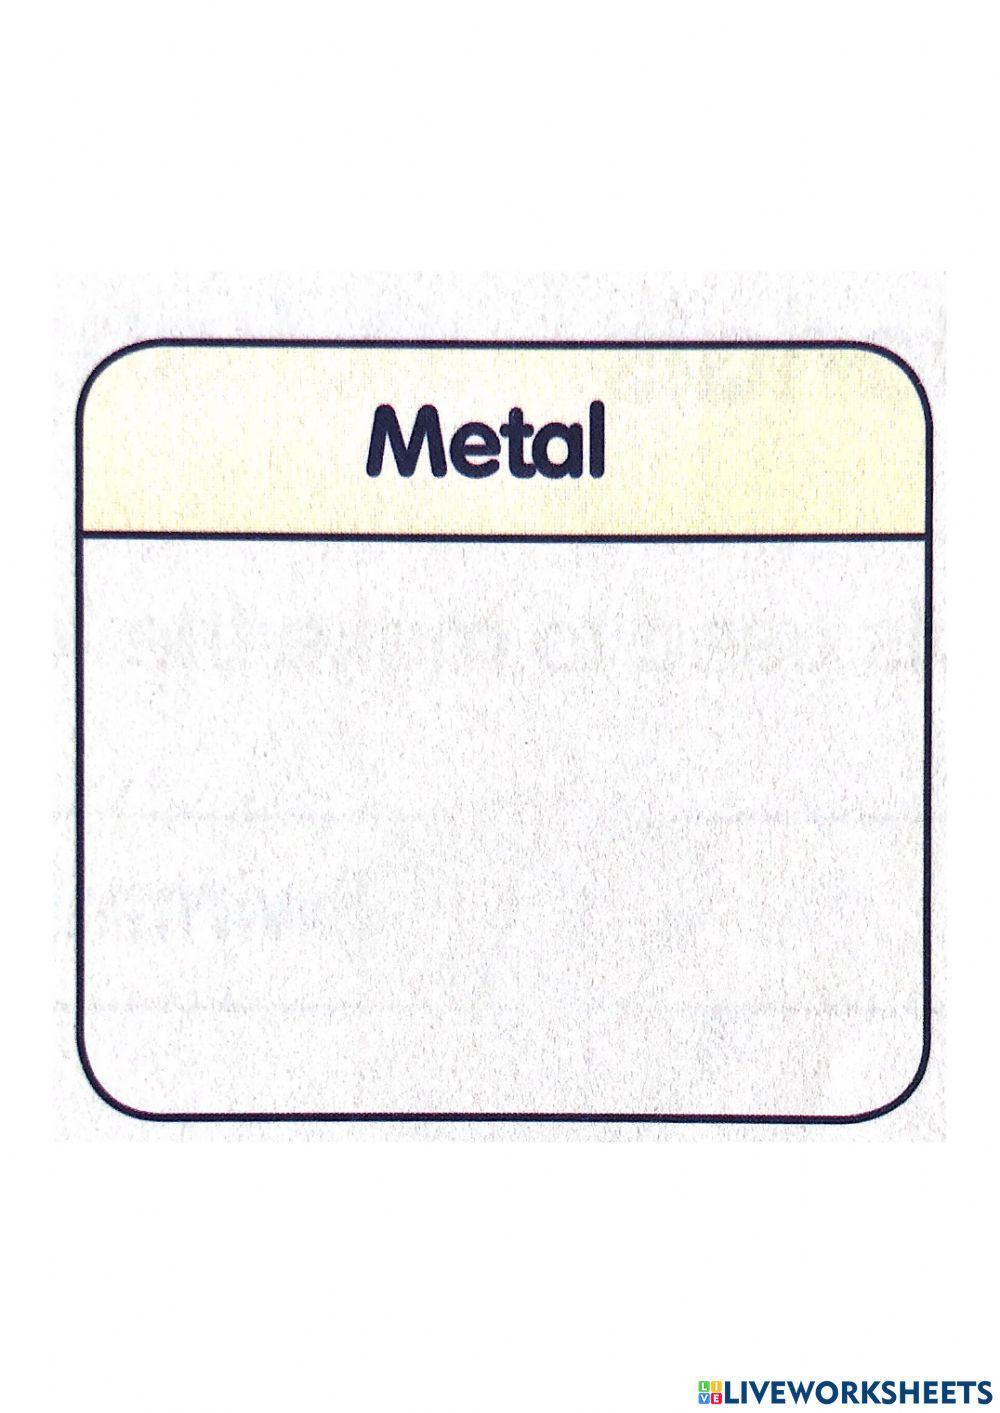 Metal Material